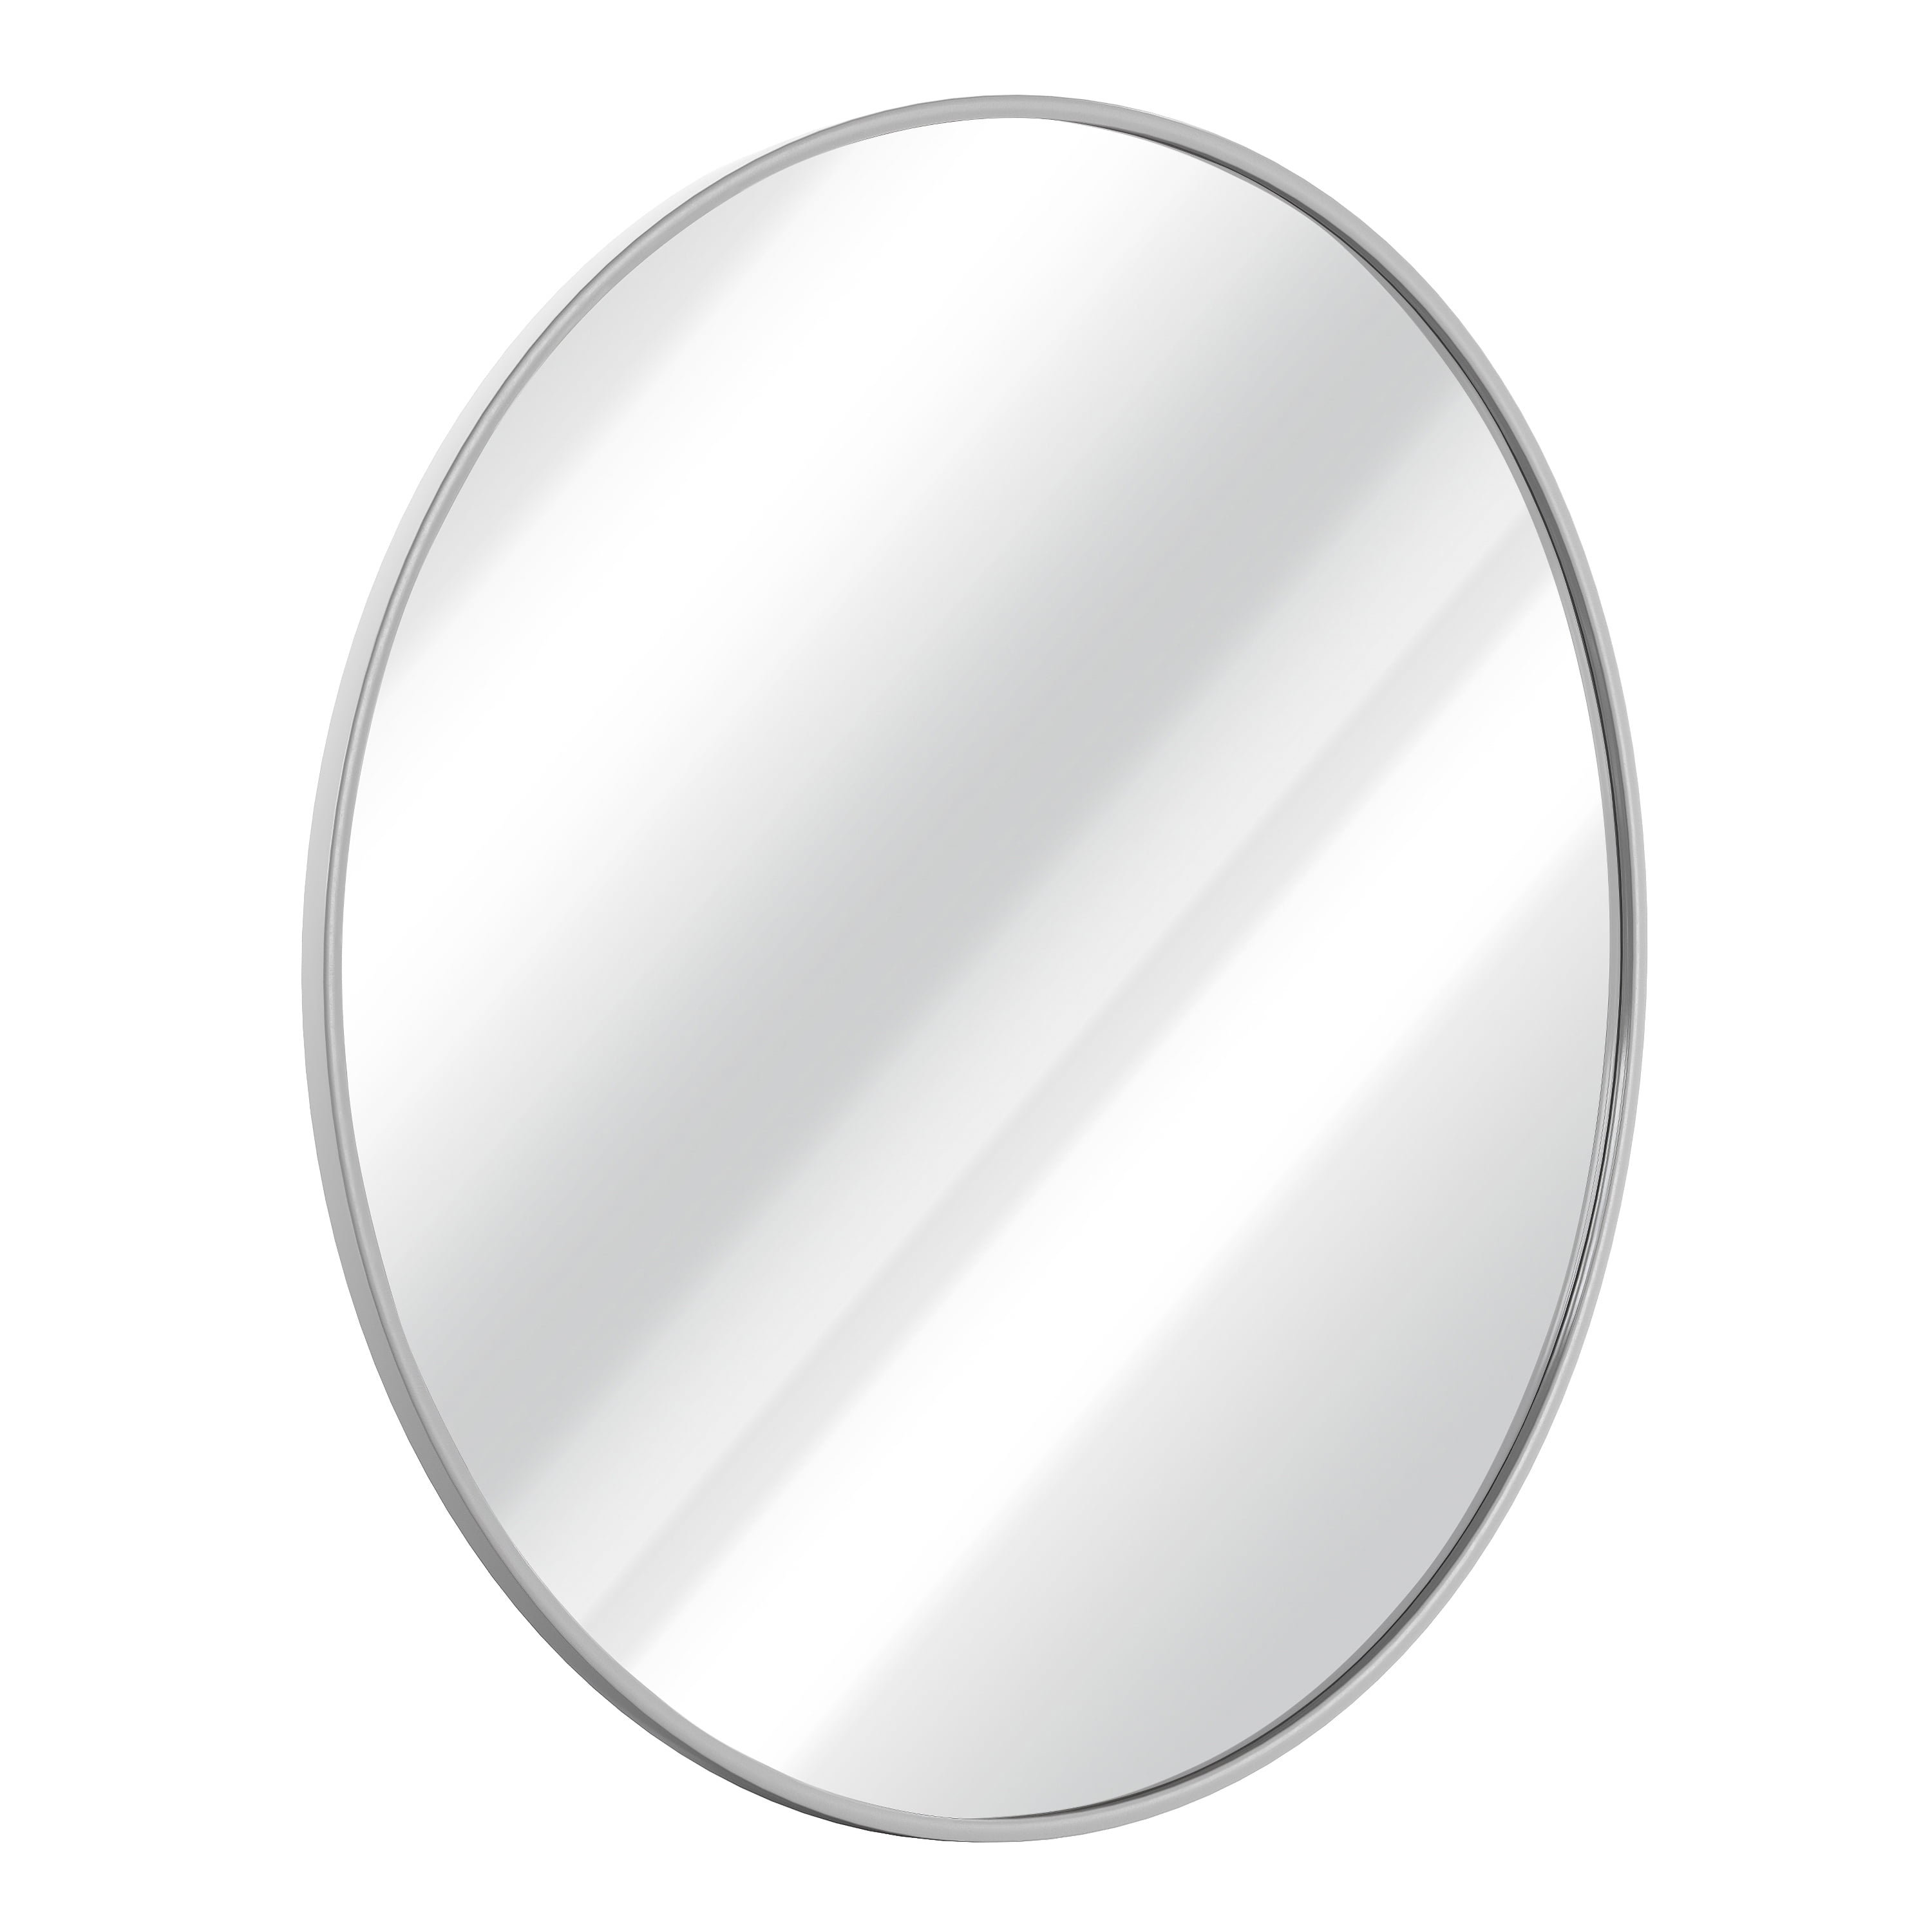  Sunniry Small Round Mirror, 16 inch Round Mirror